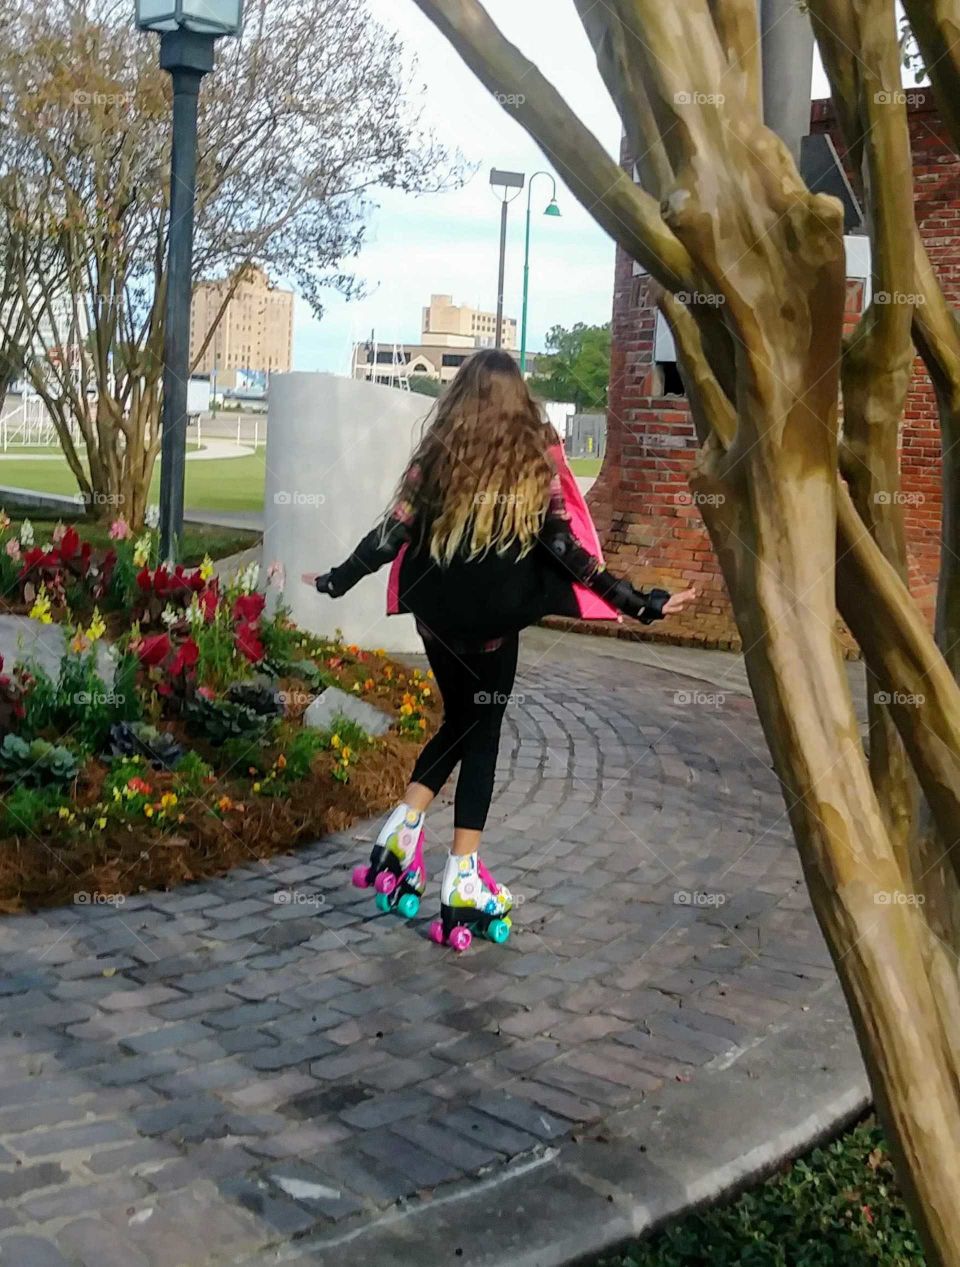 roller skating little girl